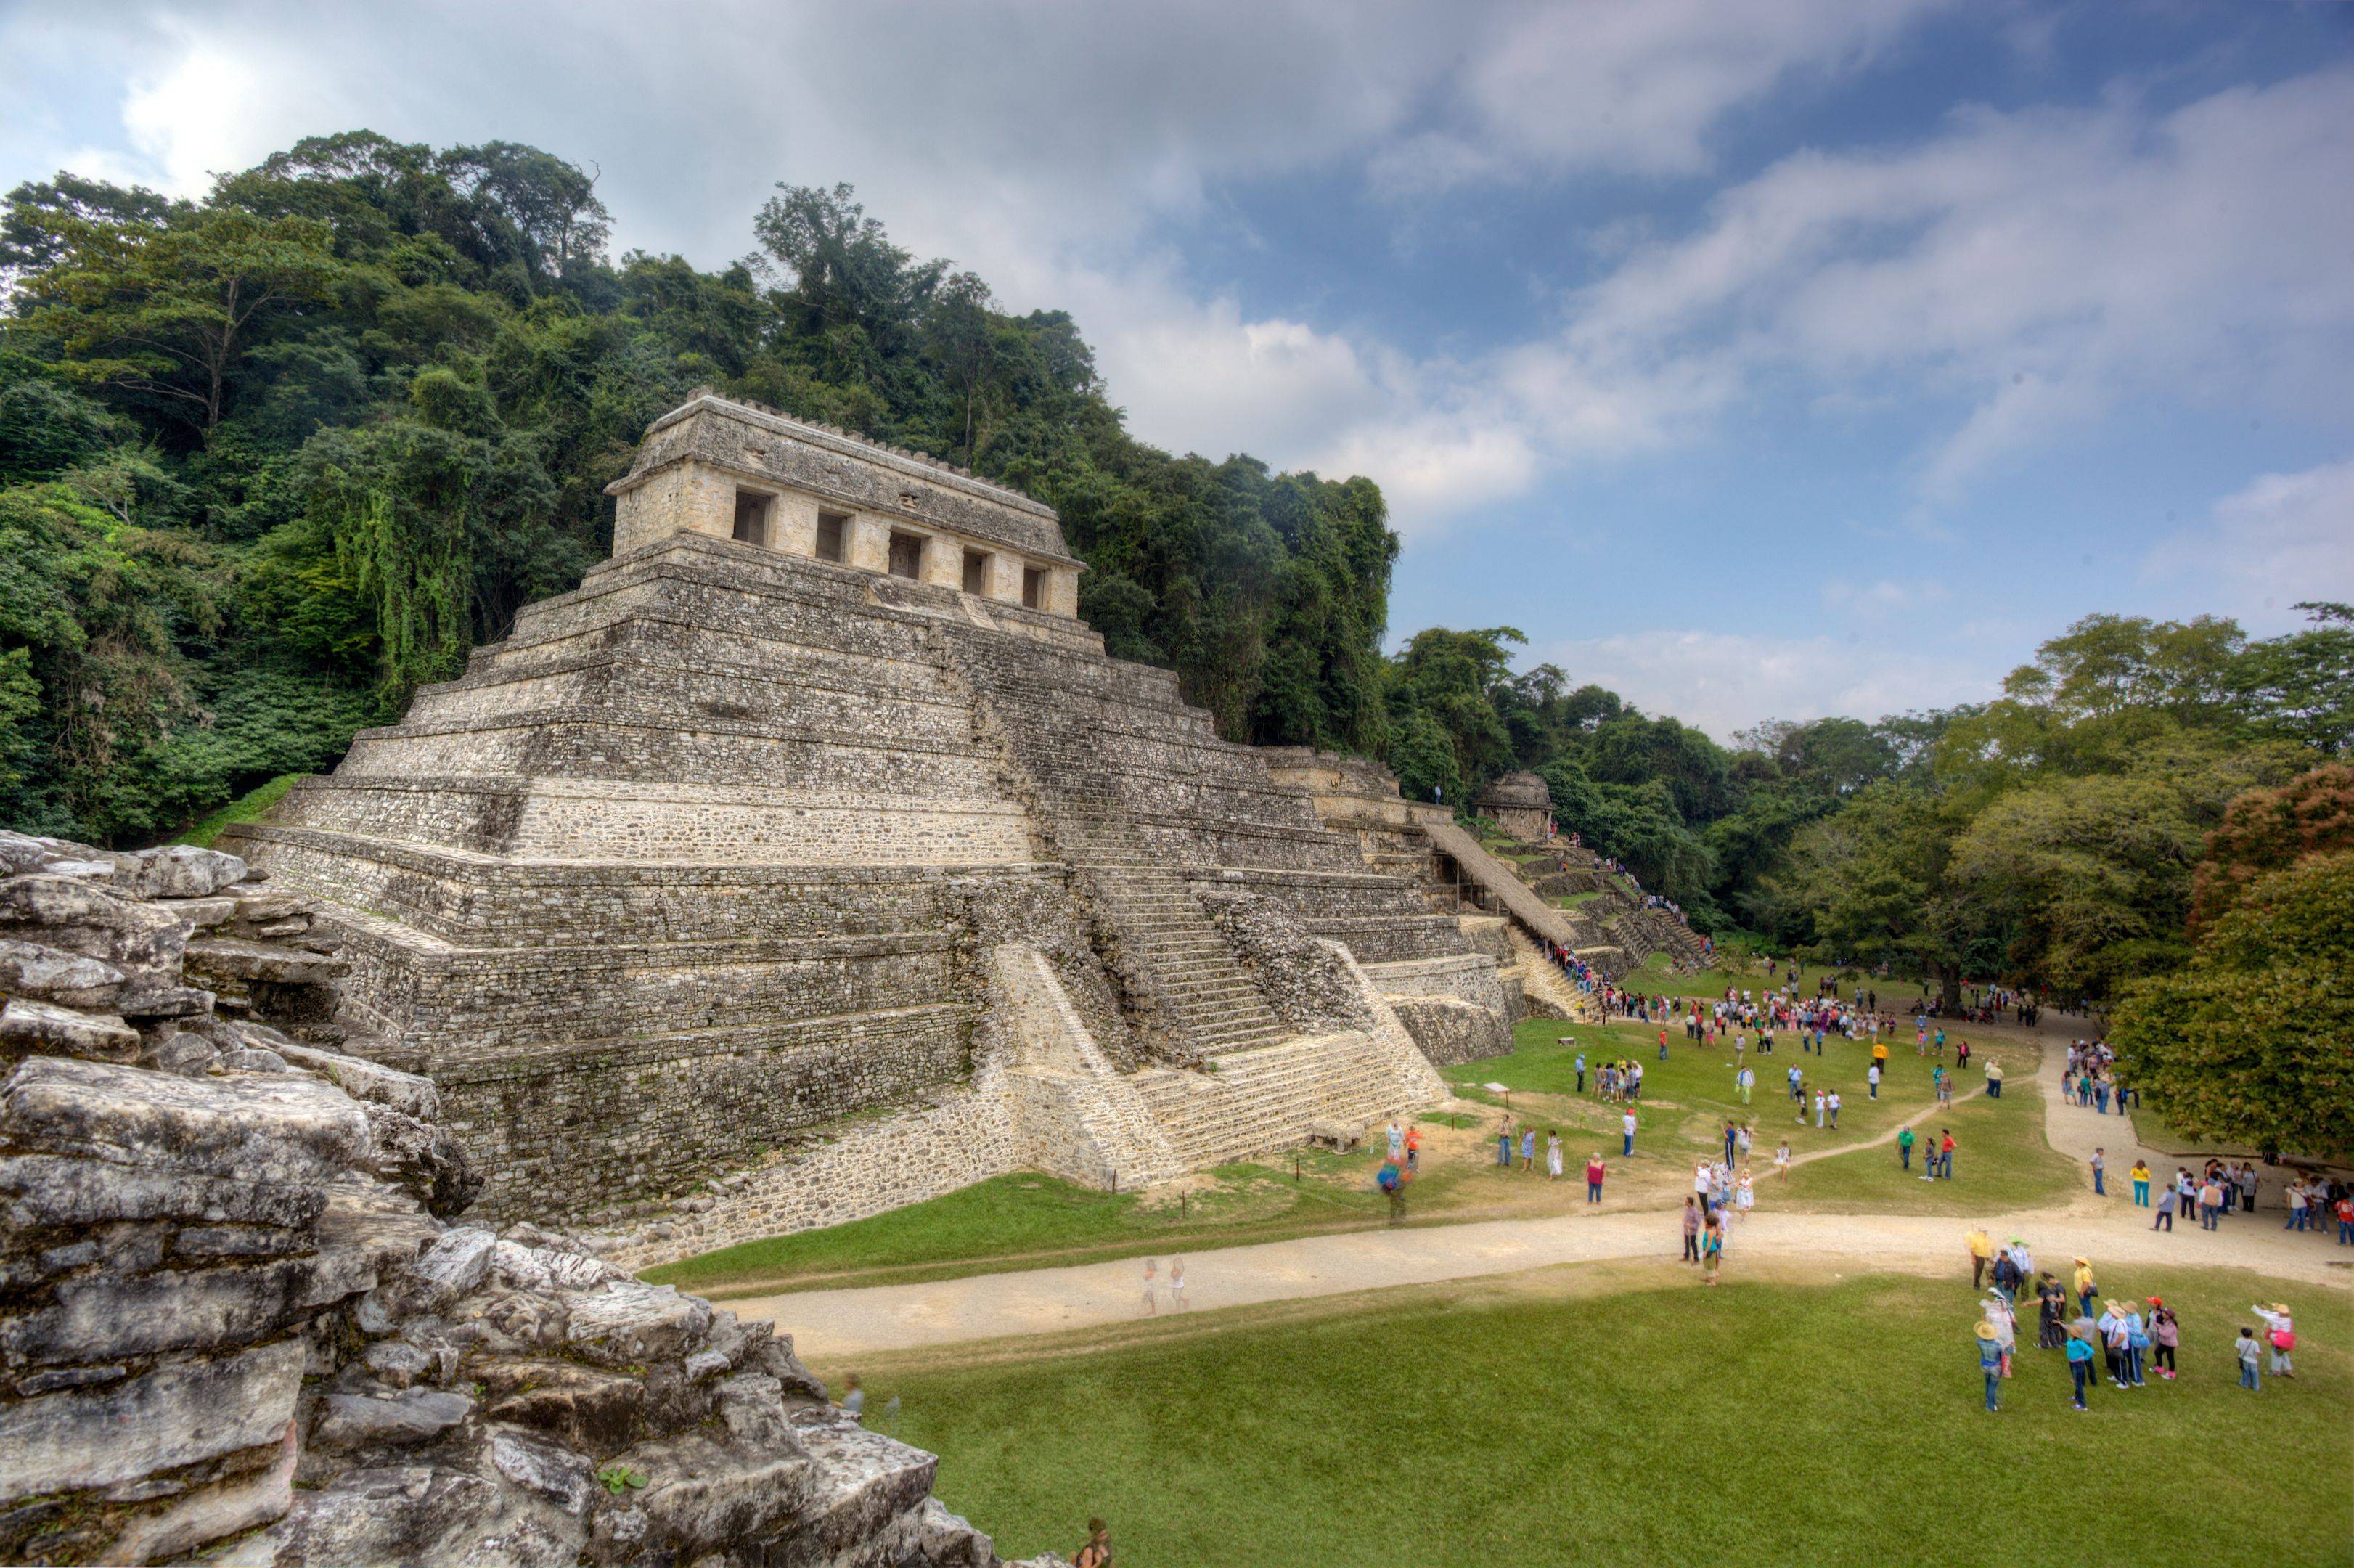 La zona archeologica di Palenque e visita di Campeche